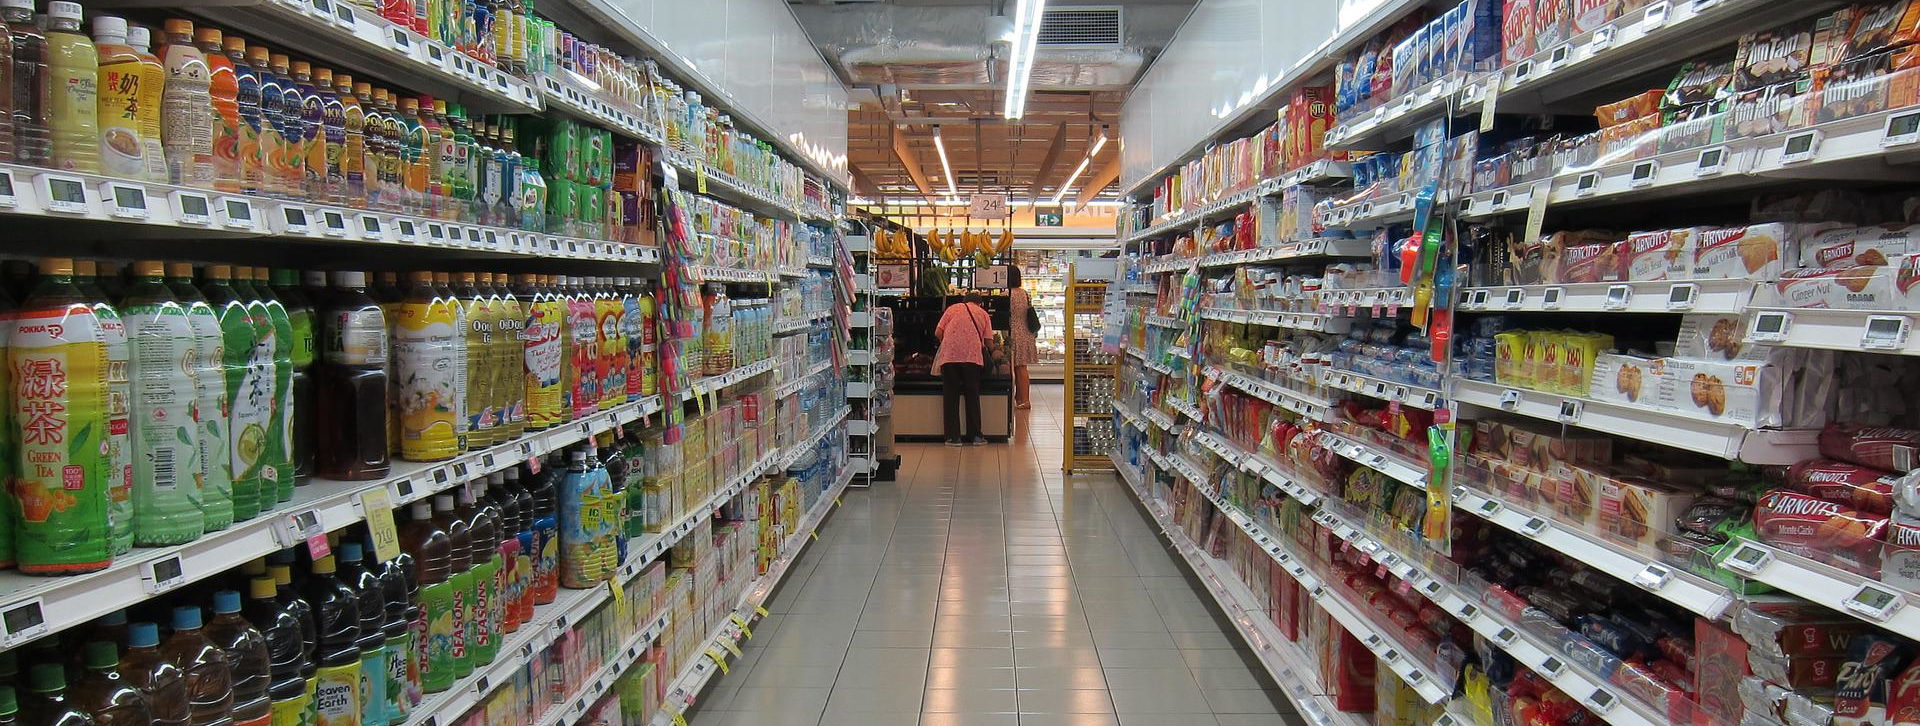 JLR expert du retail , points de vente du secteur de l'Alimentation spécialisée